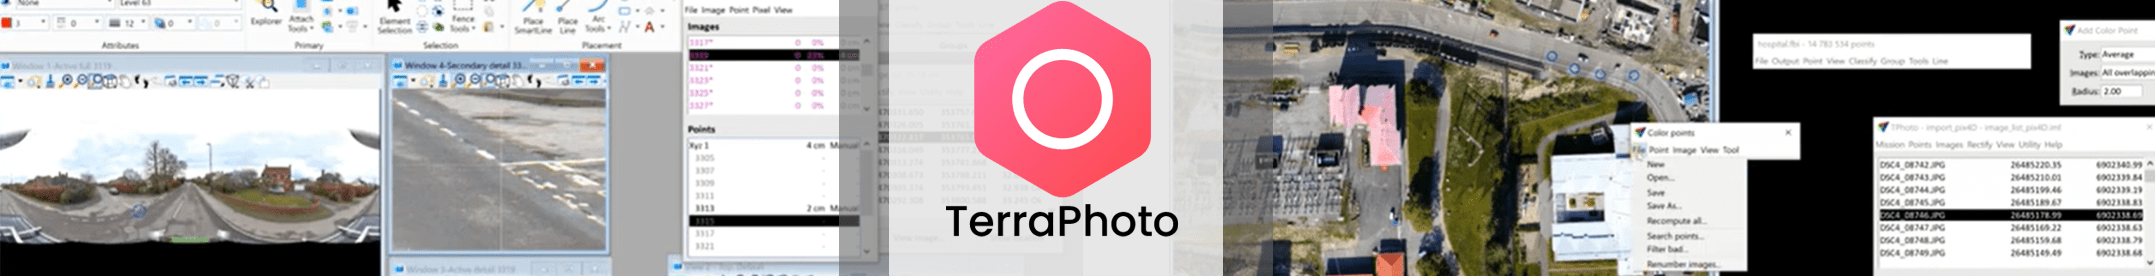 TerraPhoto